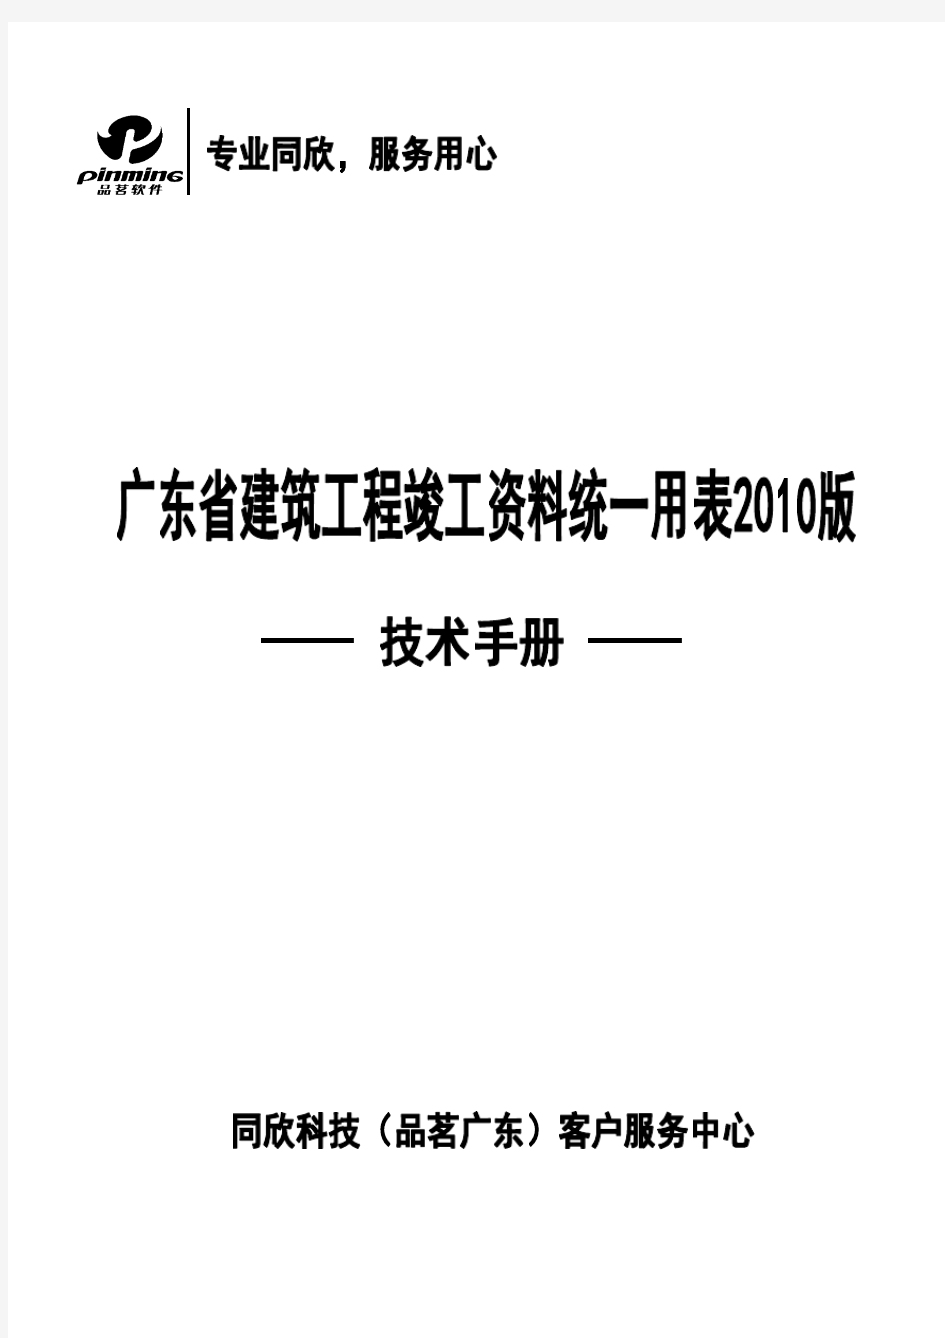 广东省建筑工程竣工资料统一用表技术手册(20200524200247)